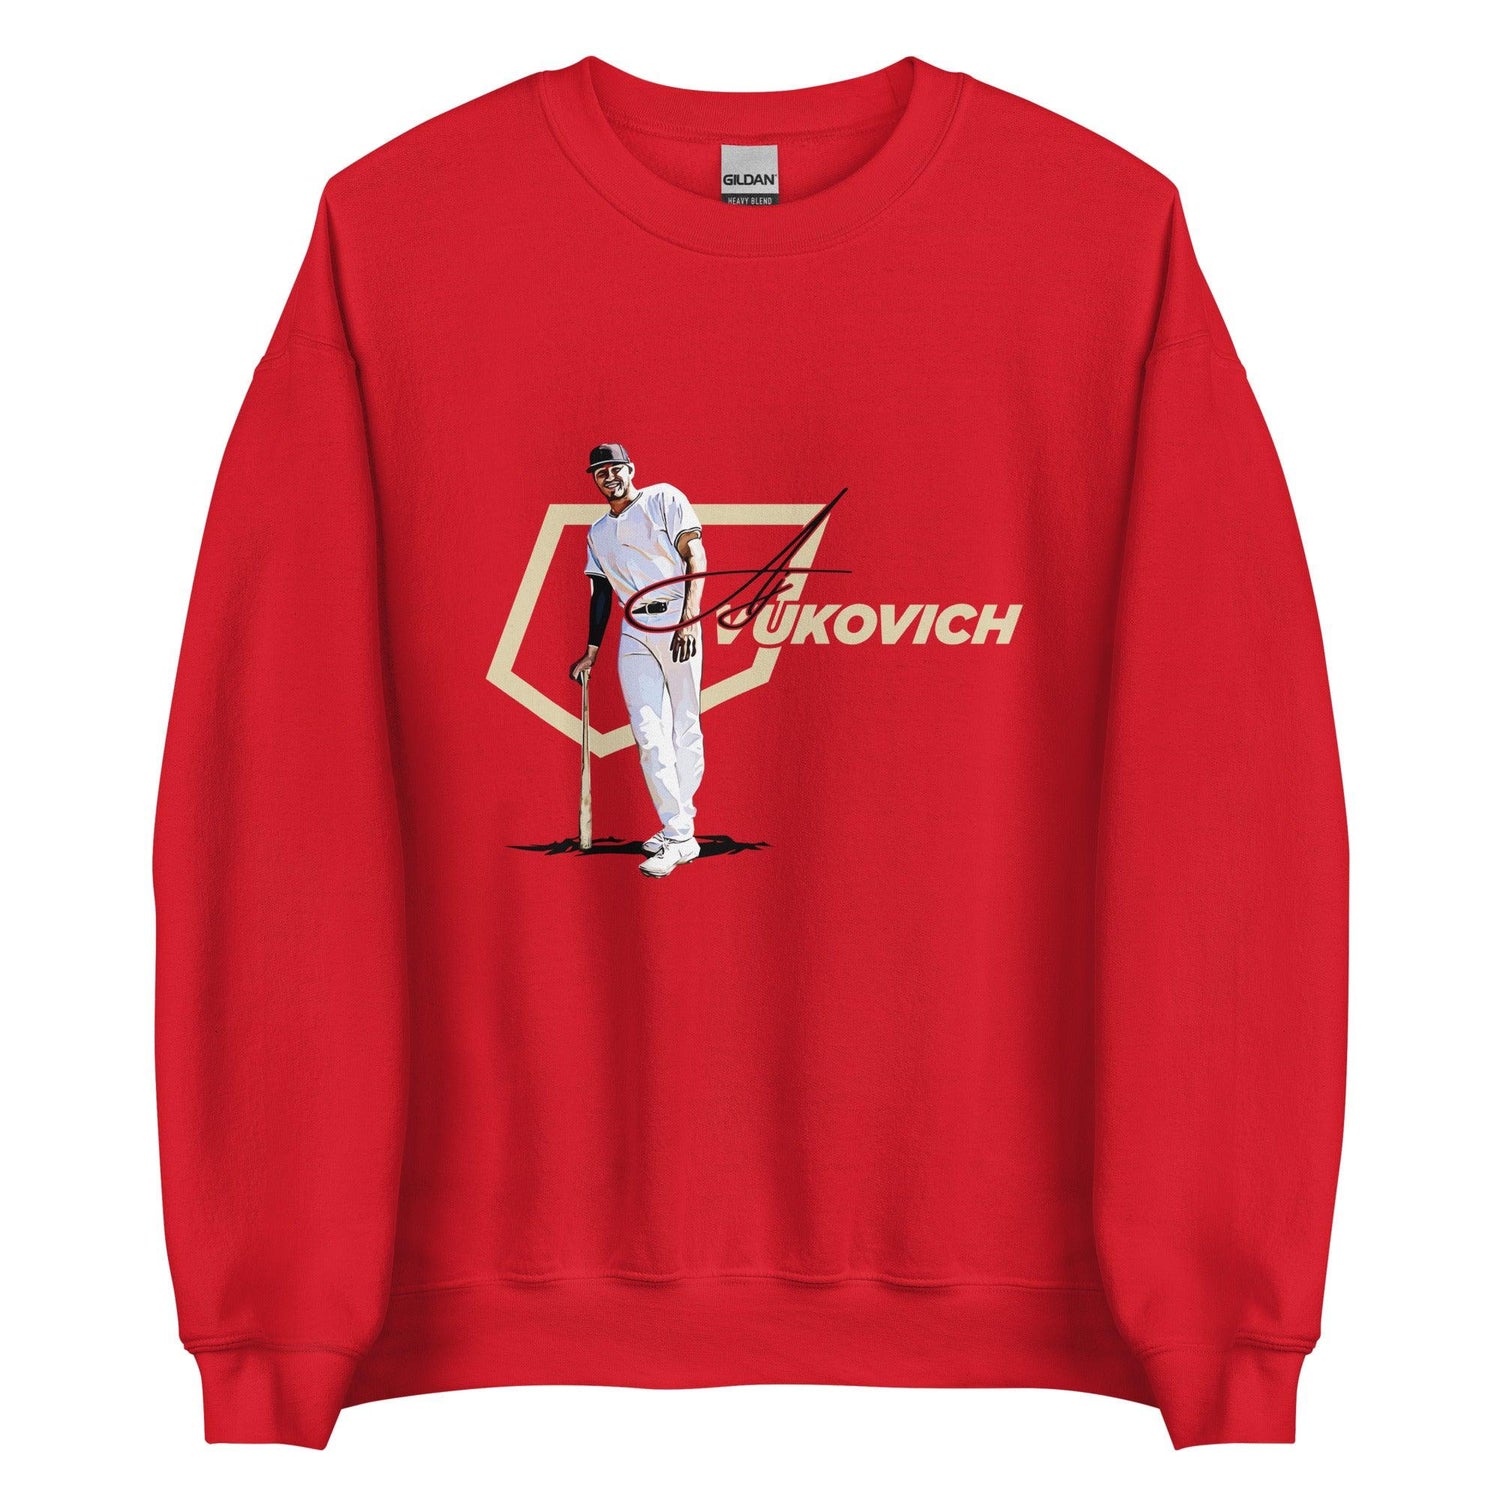 AJ Vukovich “Heritage” Sweatshirt - Fan Arch